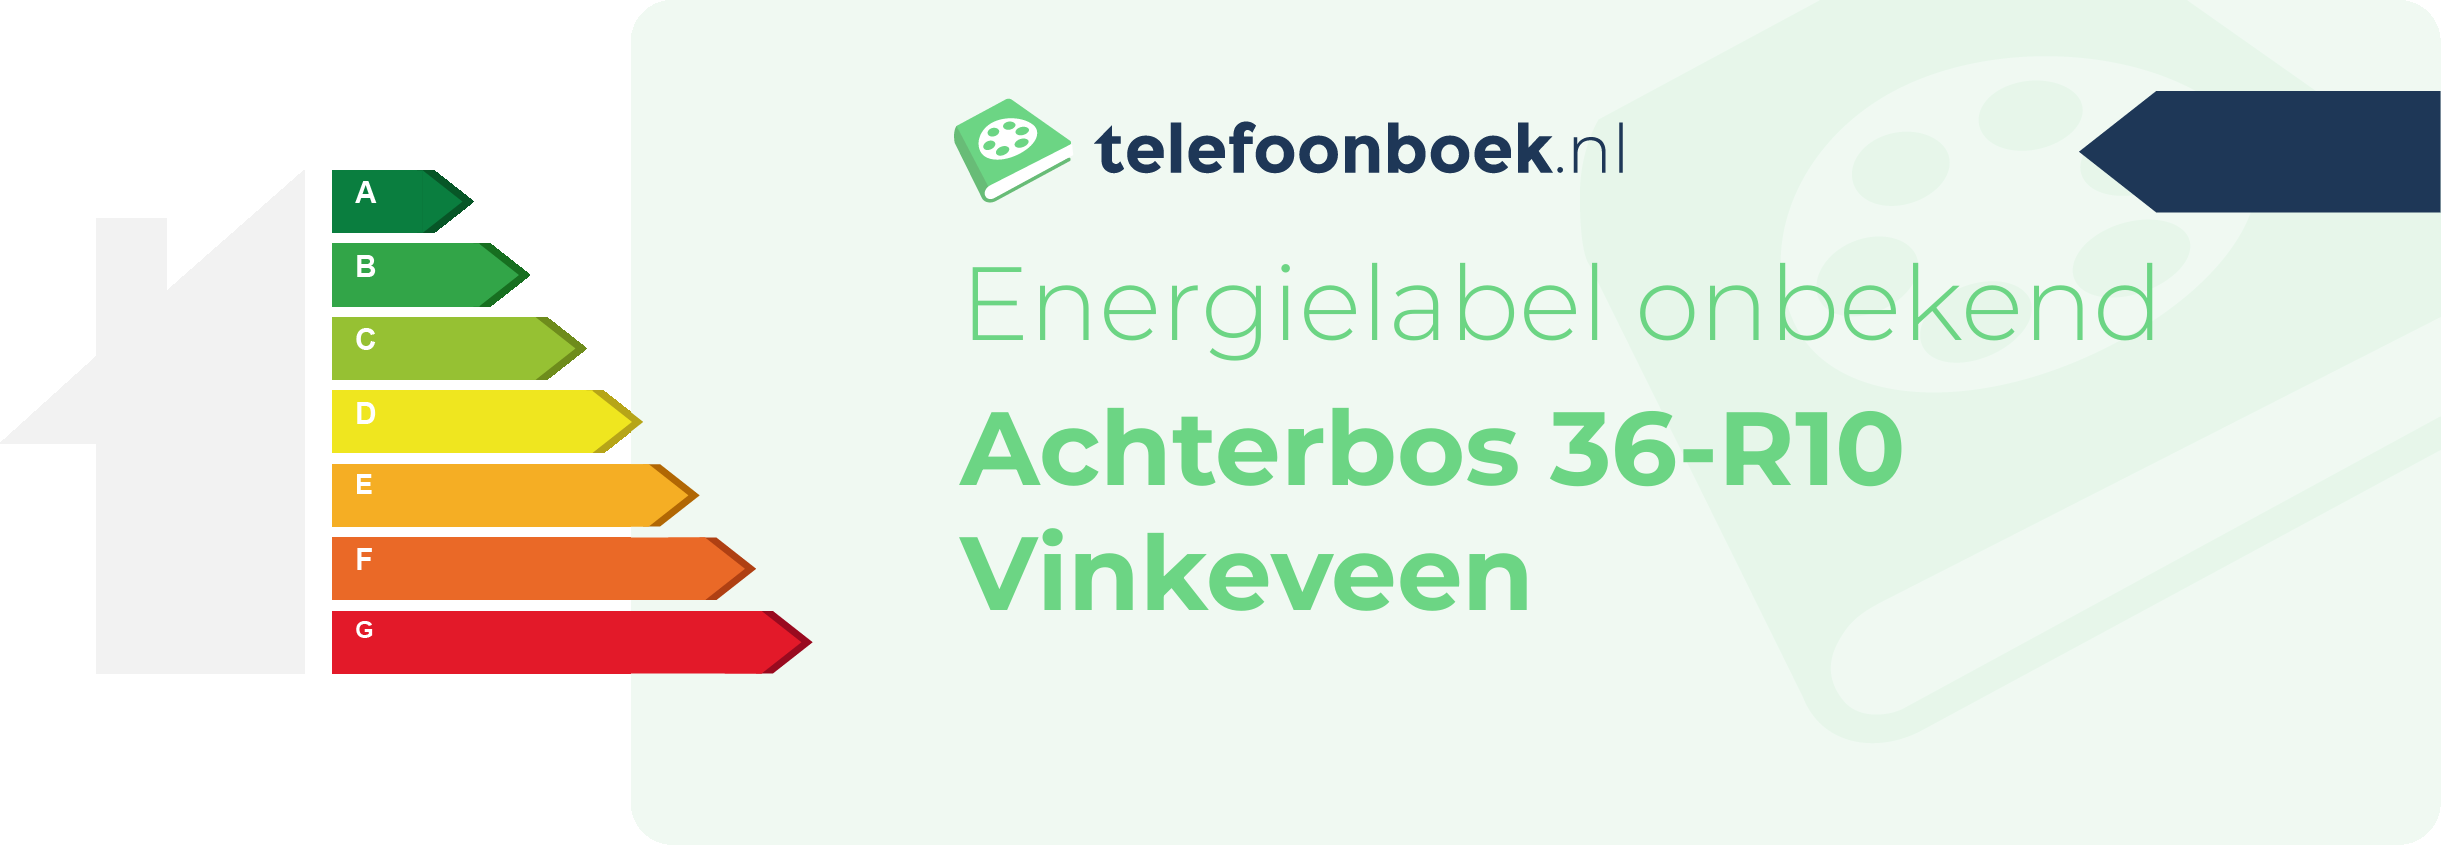 Energielabel Achterbos 36-R10 Vinkeveen